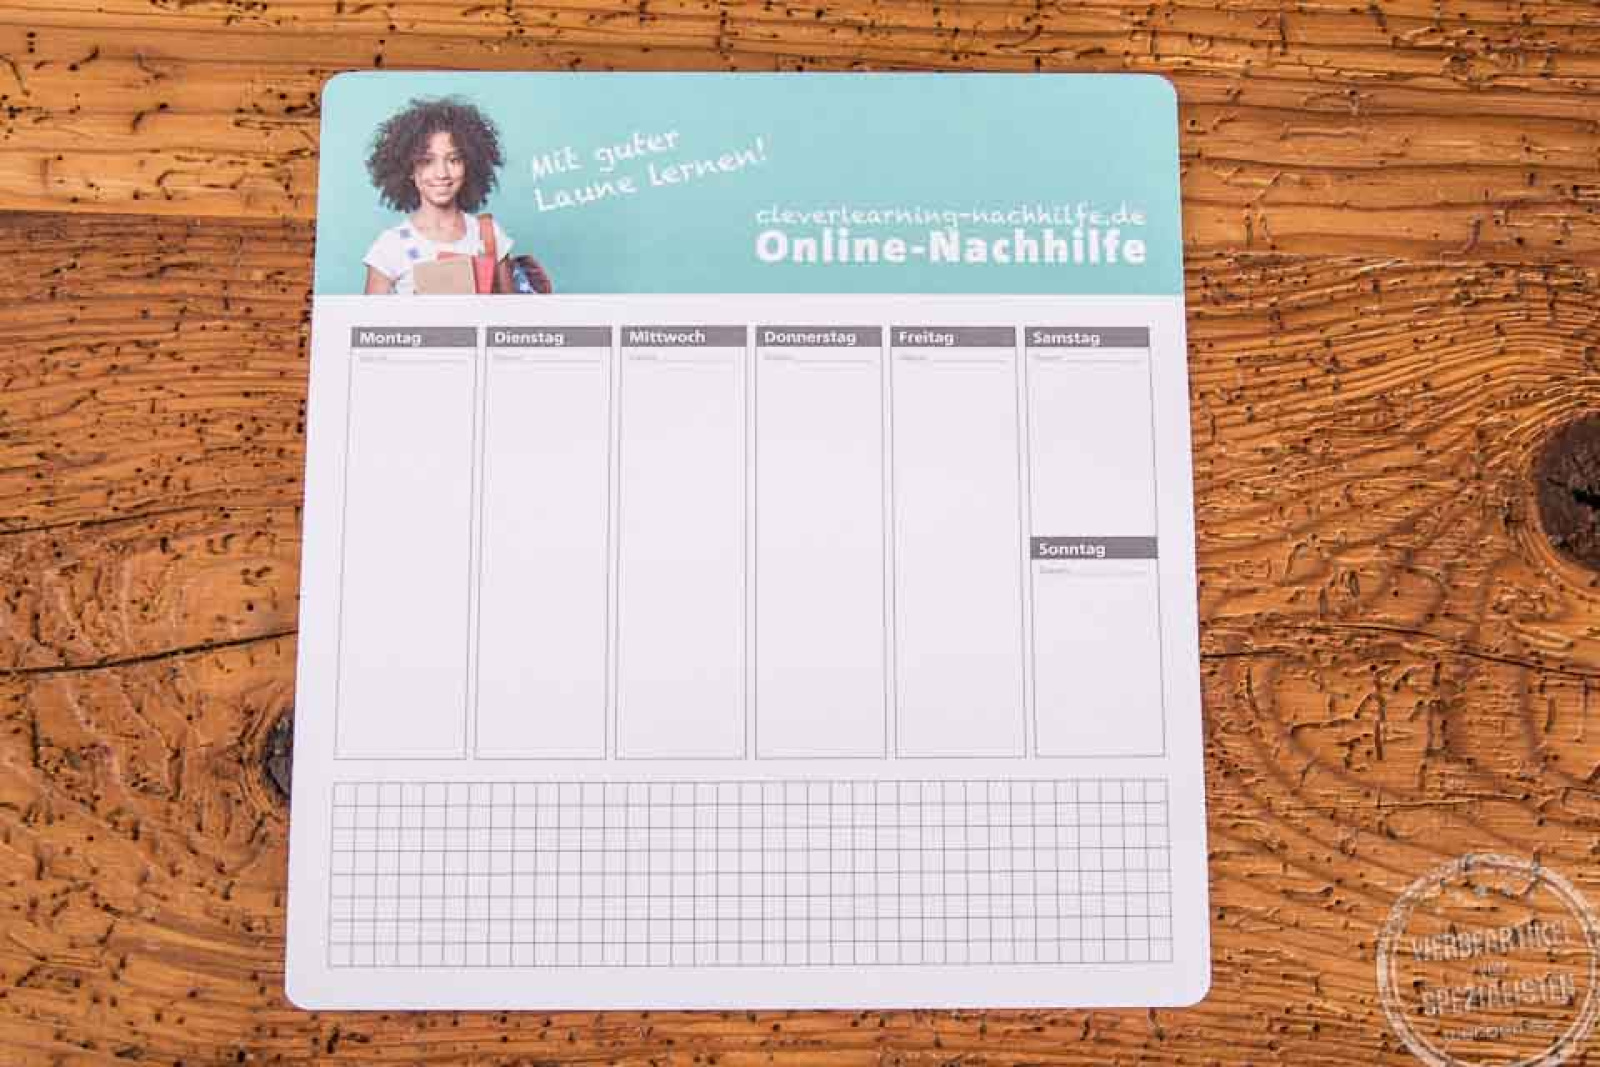 Haftnotizen Mousepad mit Wochenplaner und Online-Nachhilfe Aufdruck als Werbeartikel.